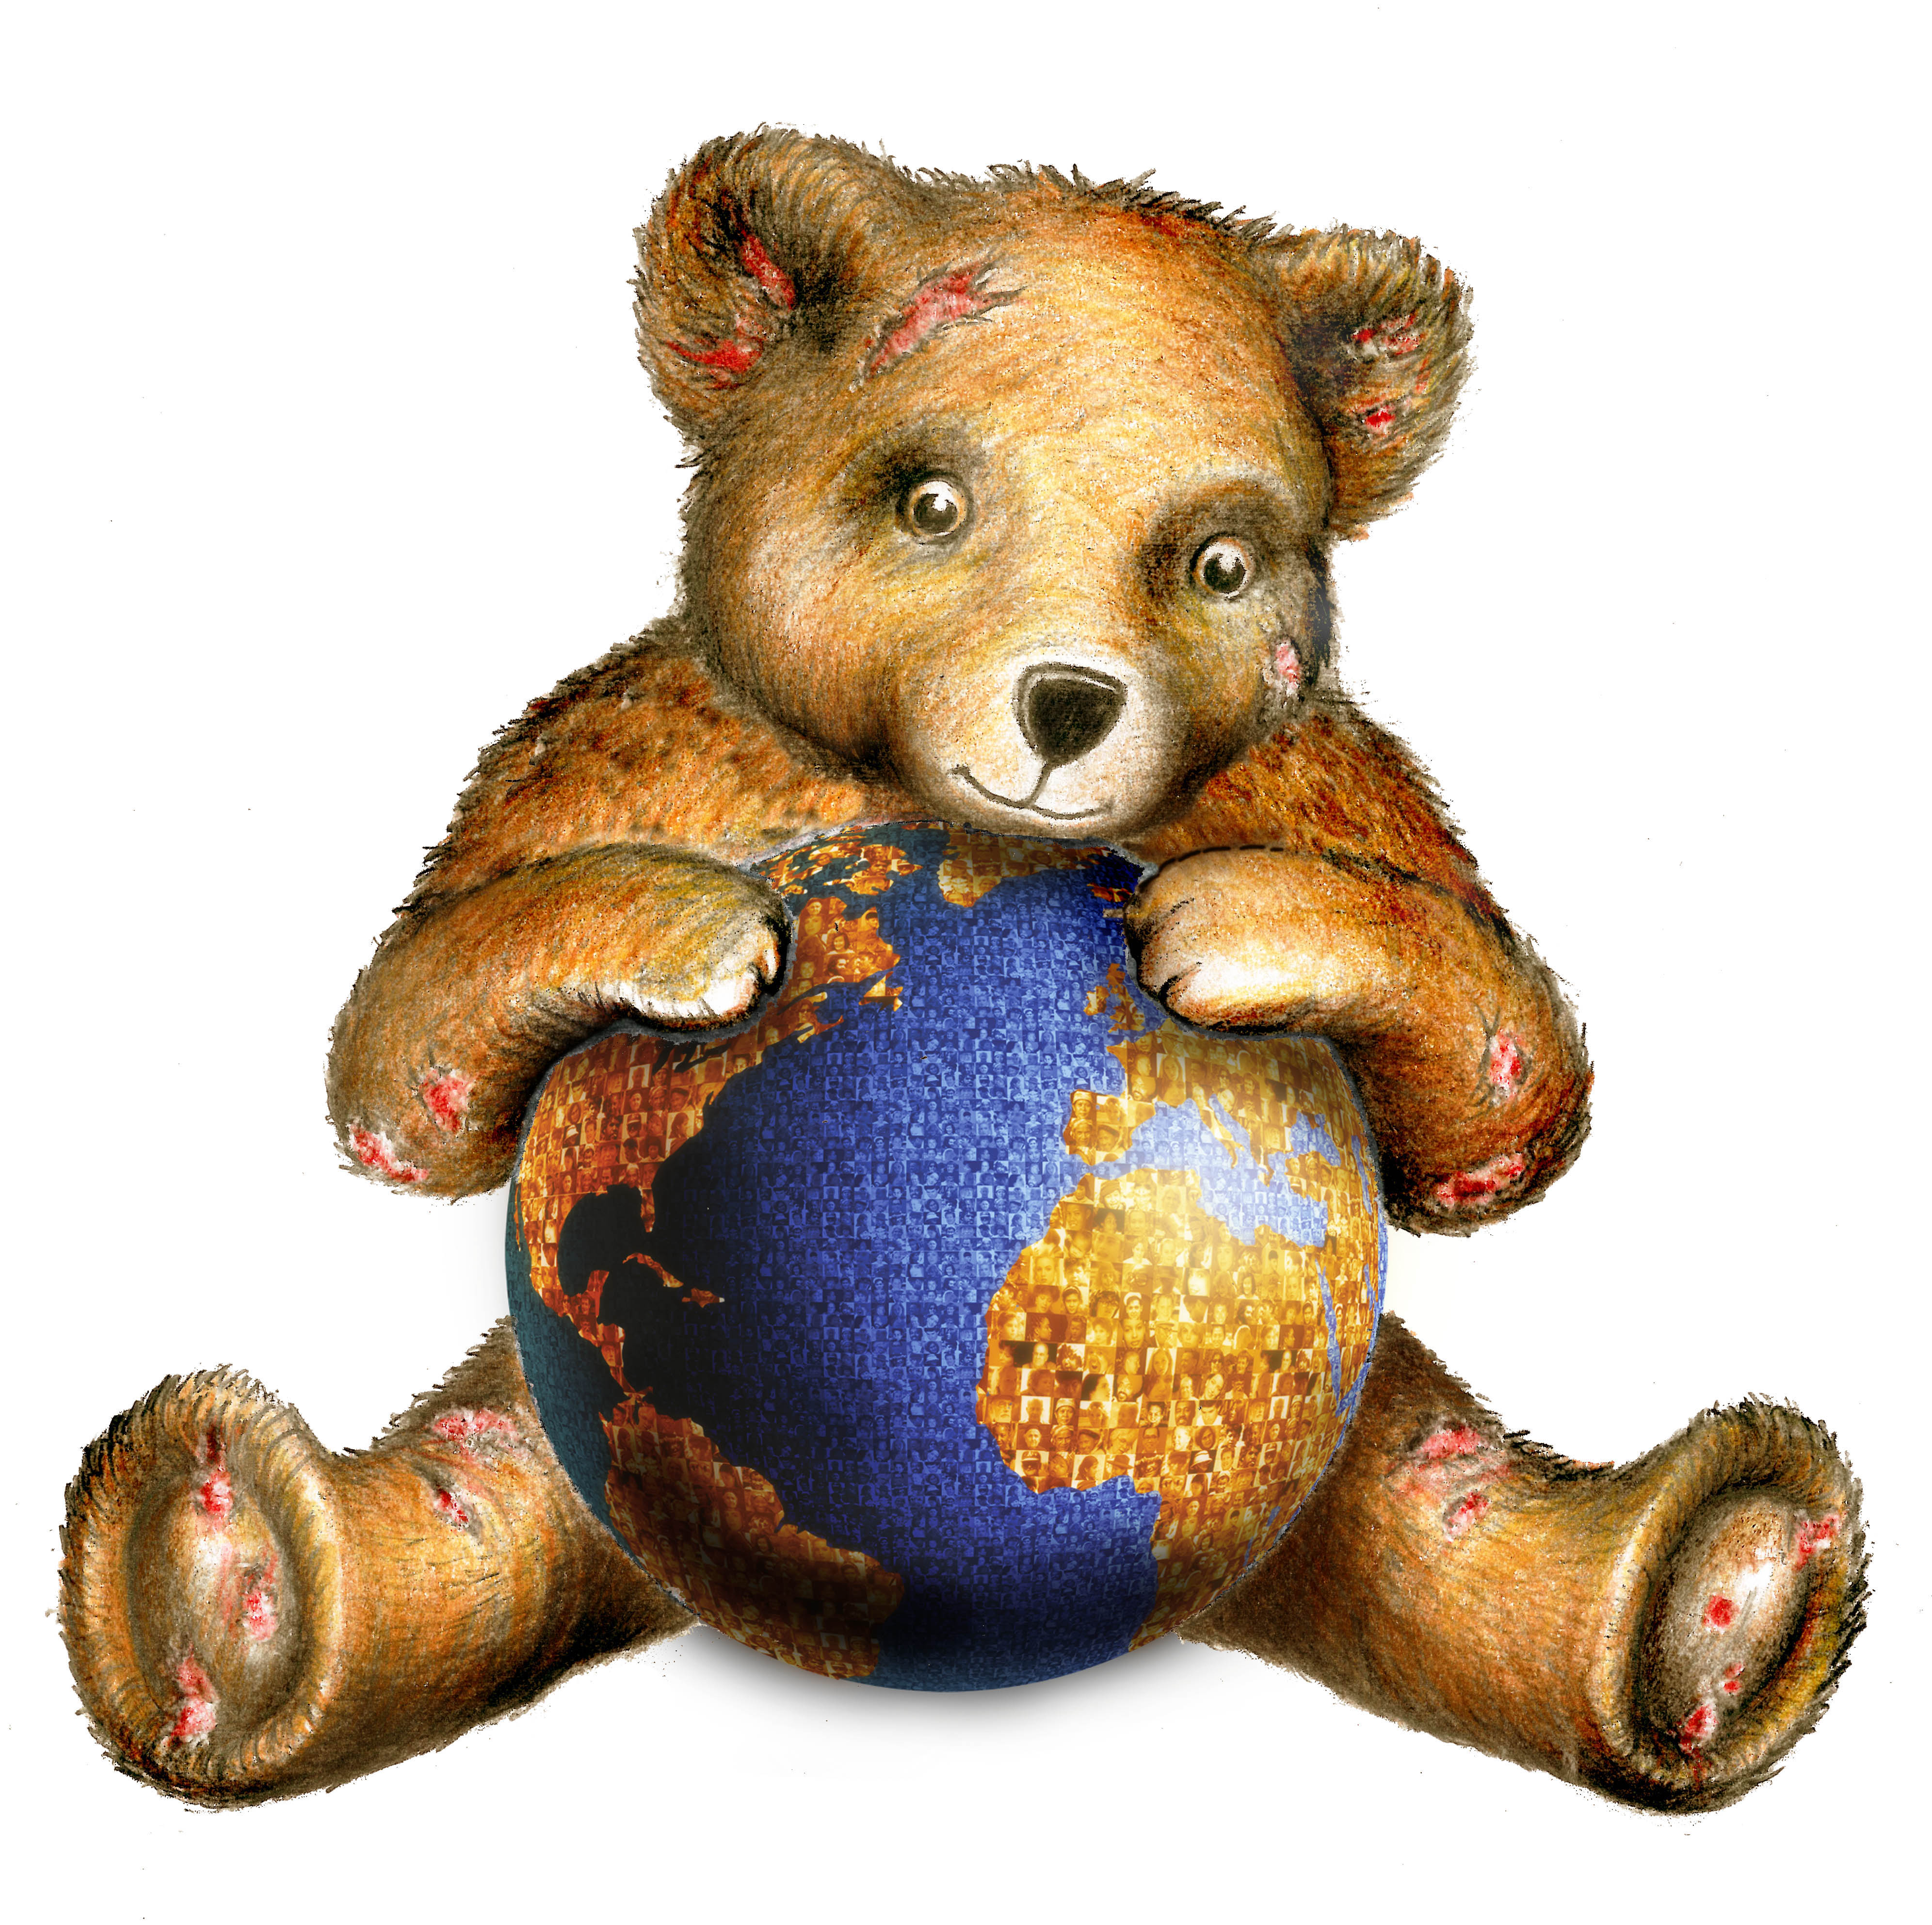 Final WPD teddy bear